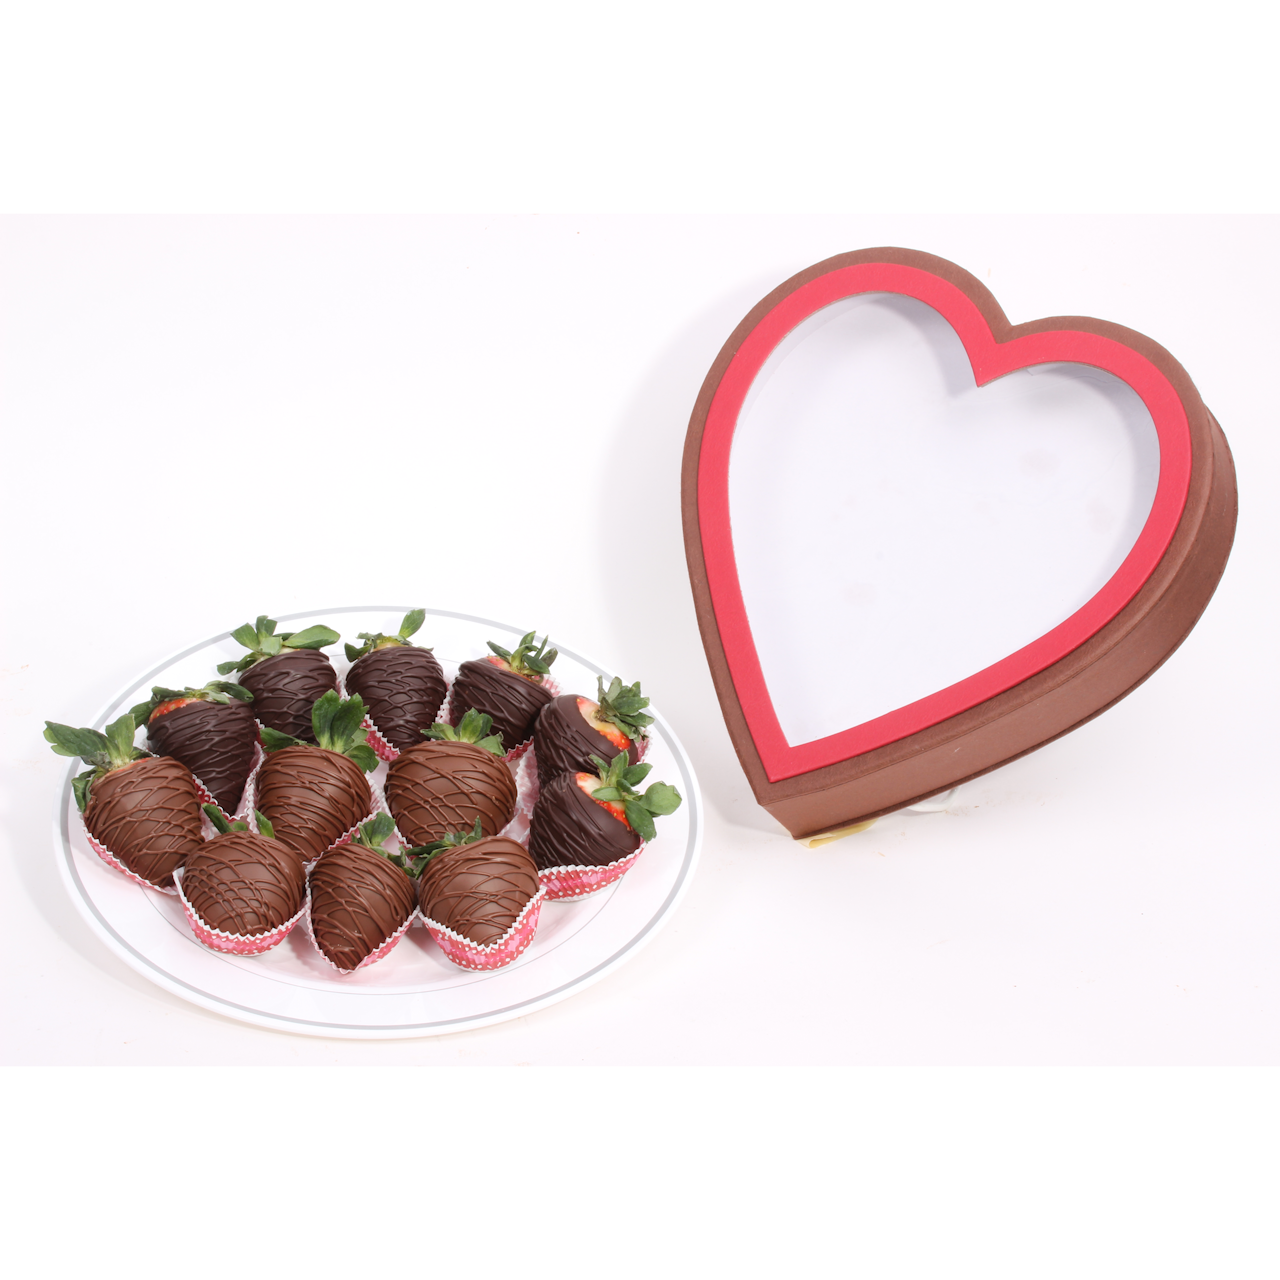 Chocolate Covered Valentine's Strawberries